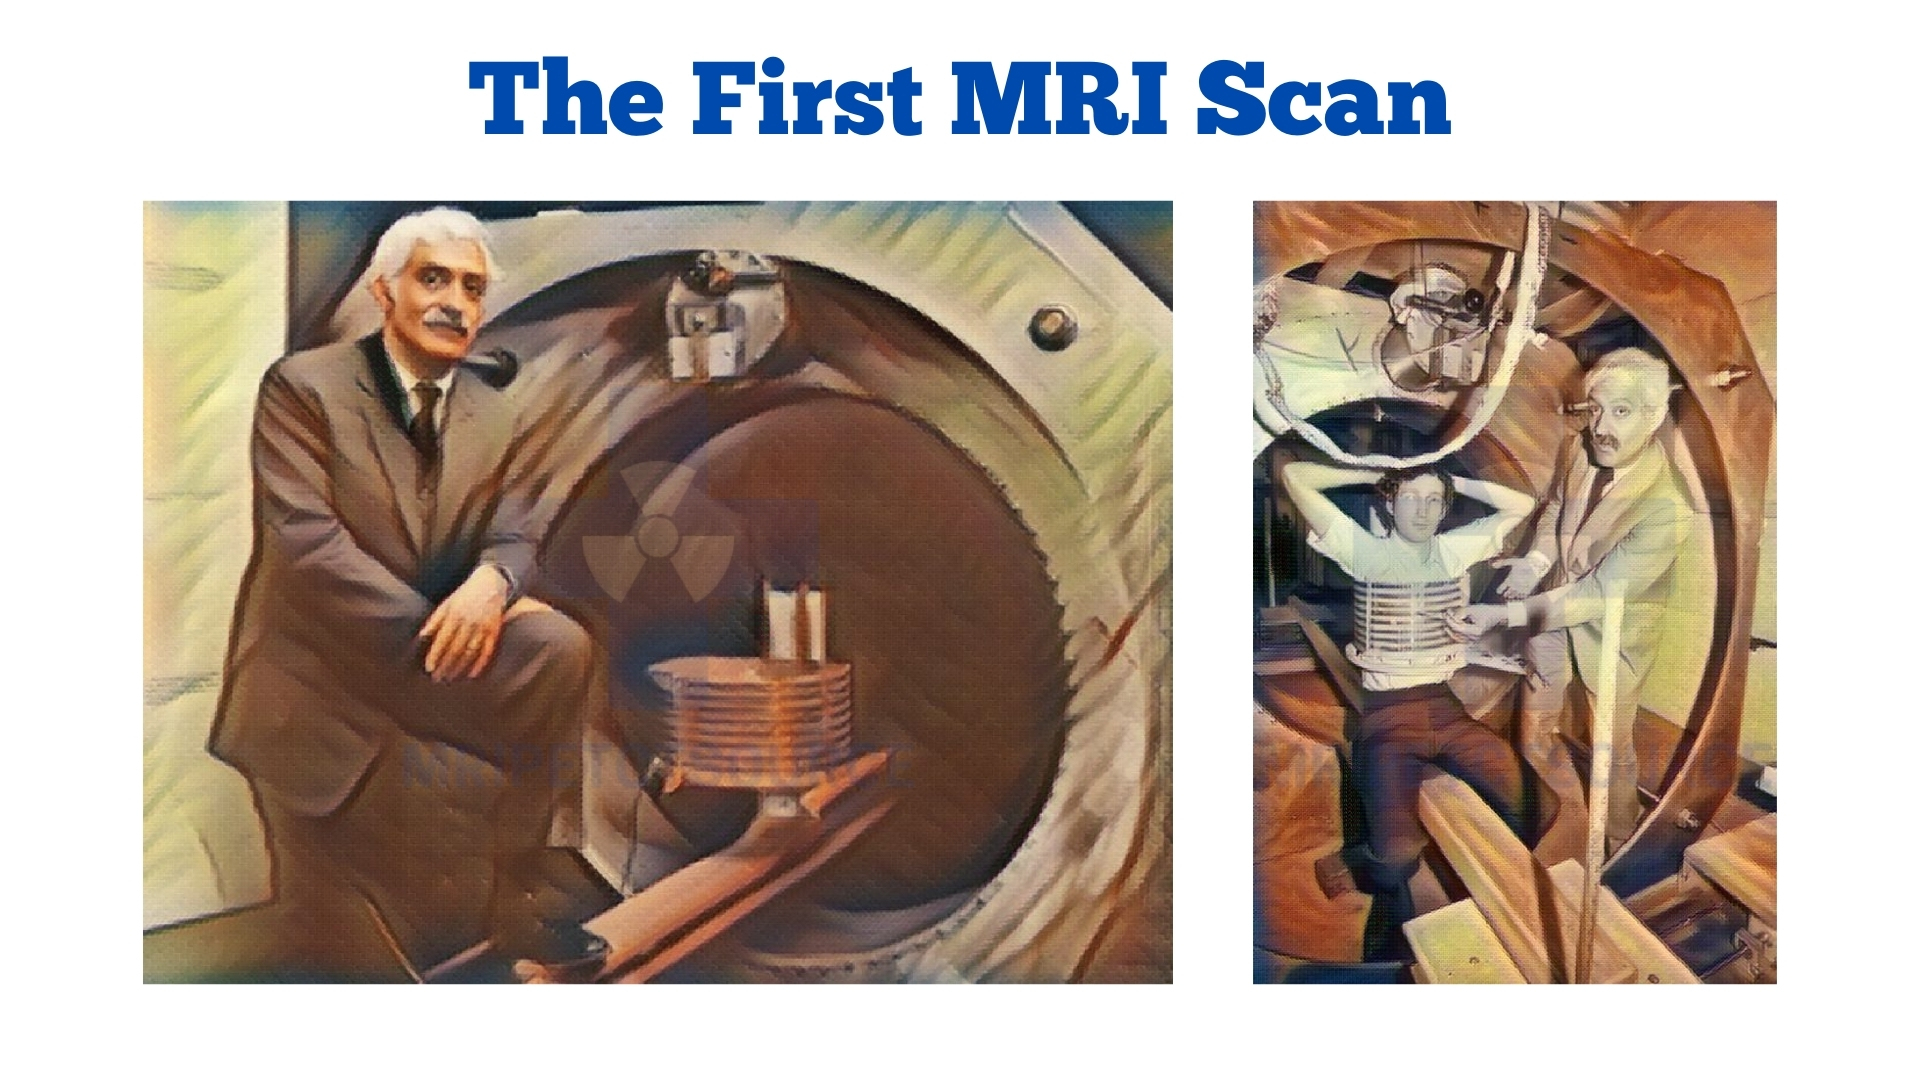 first MRI scan, mri top 20 sacinating facts, dr. raymond damadian, magnetic resonance imaging